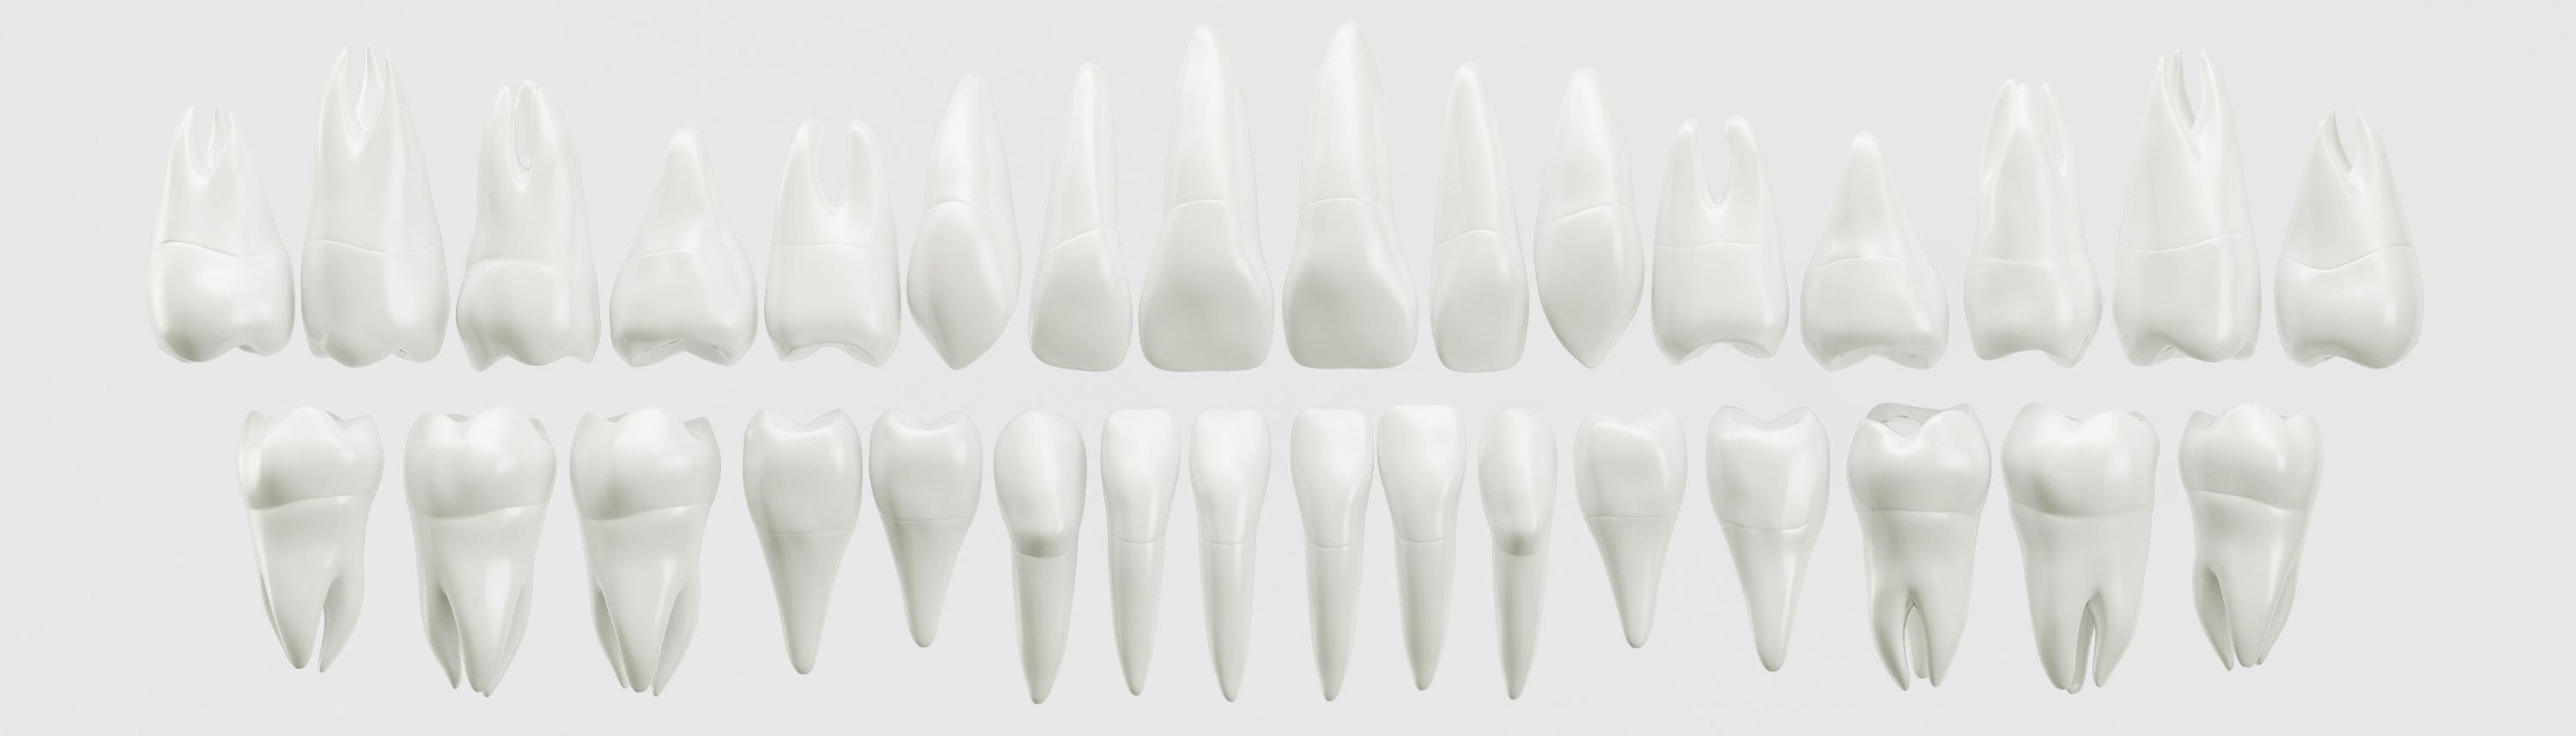 модели зубов демонстрирующая количество каналов требующих лечения